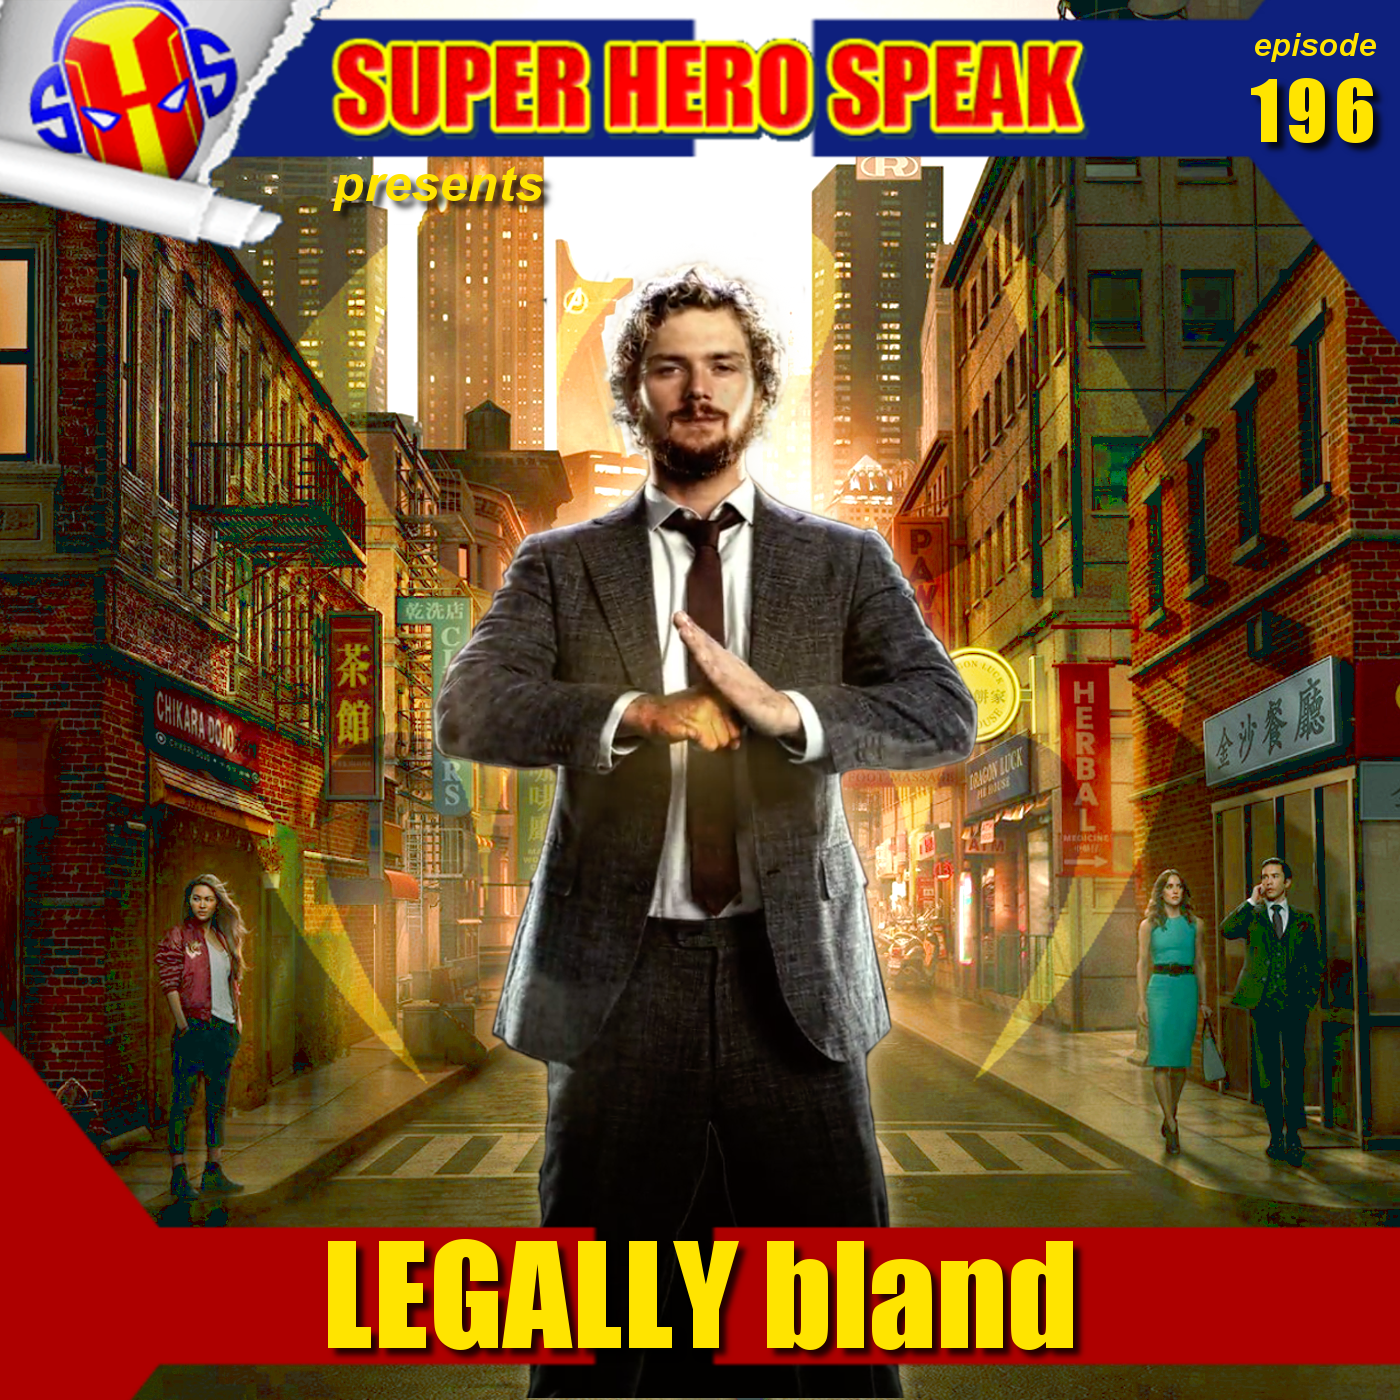 #196: Legally Bland